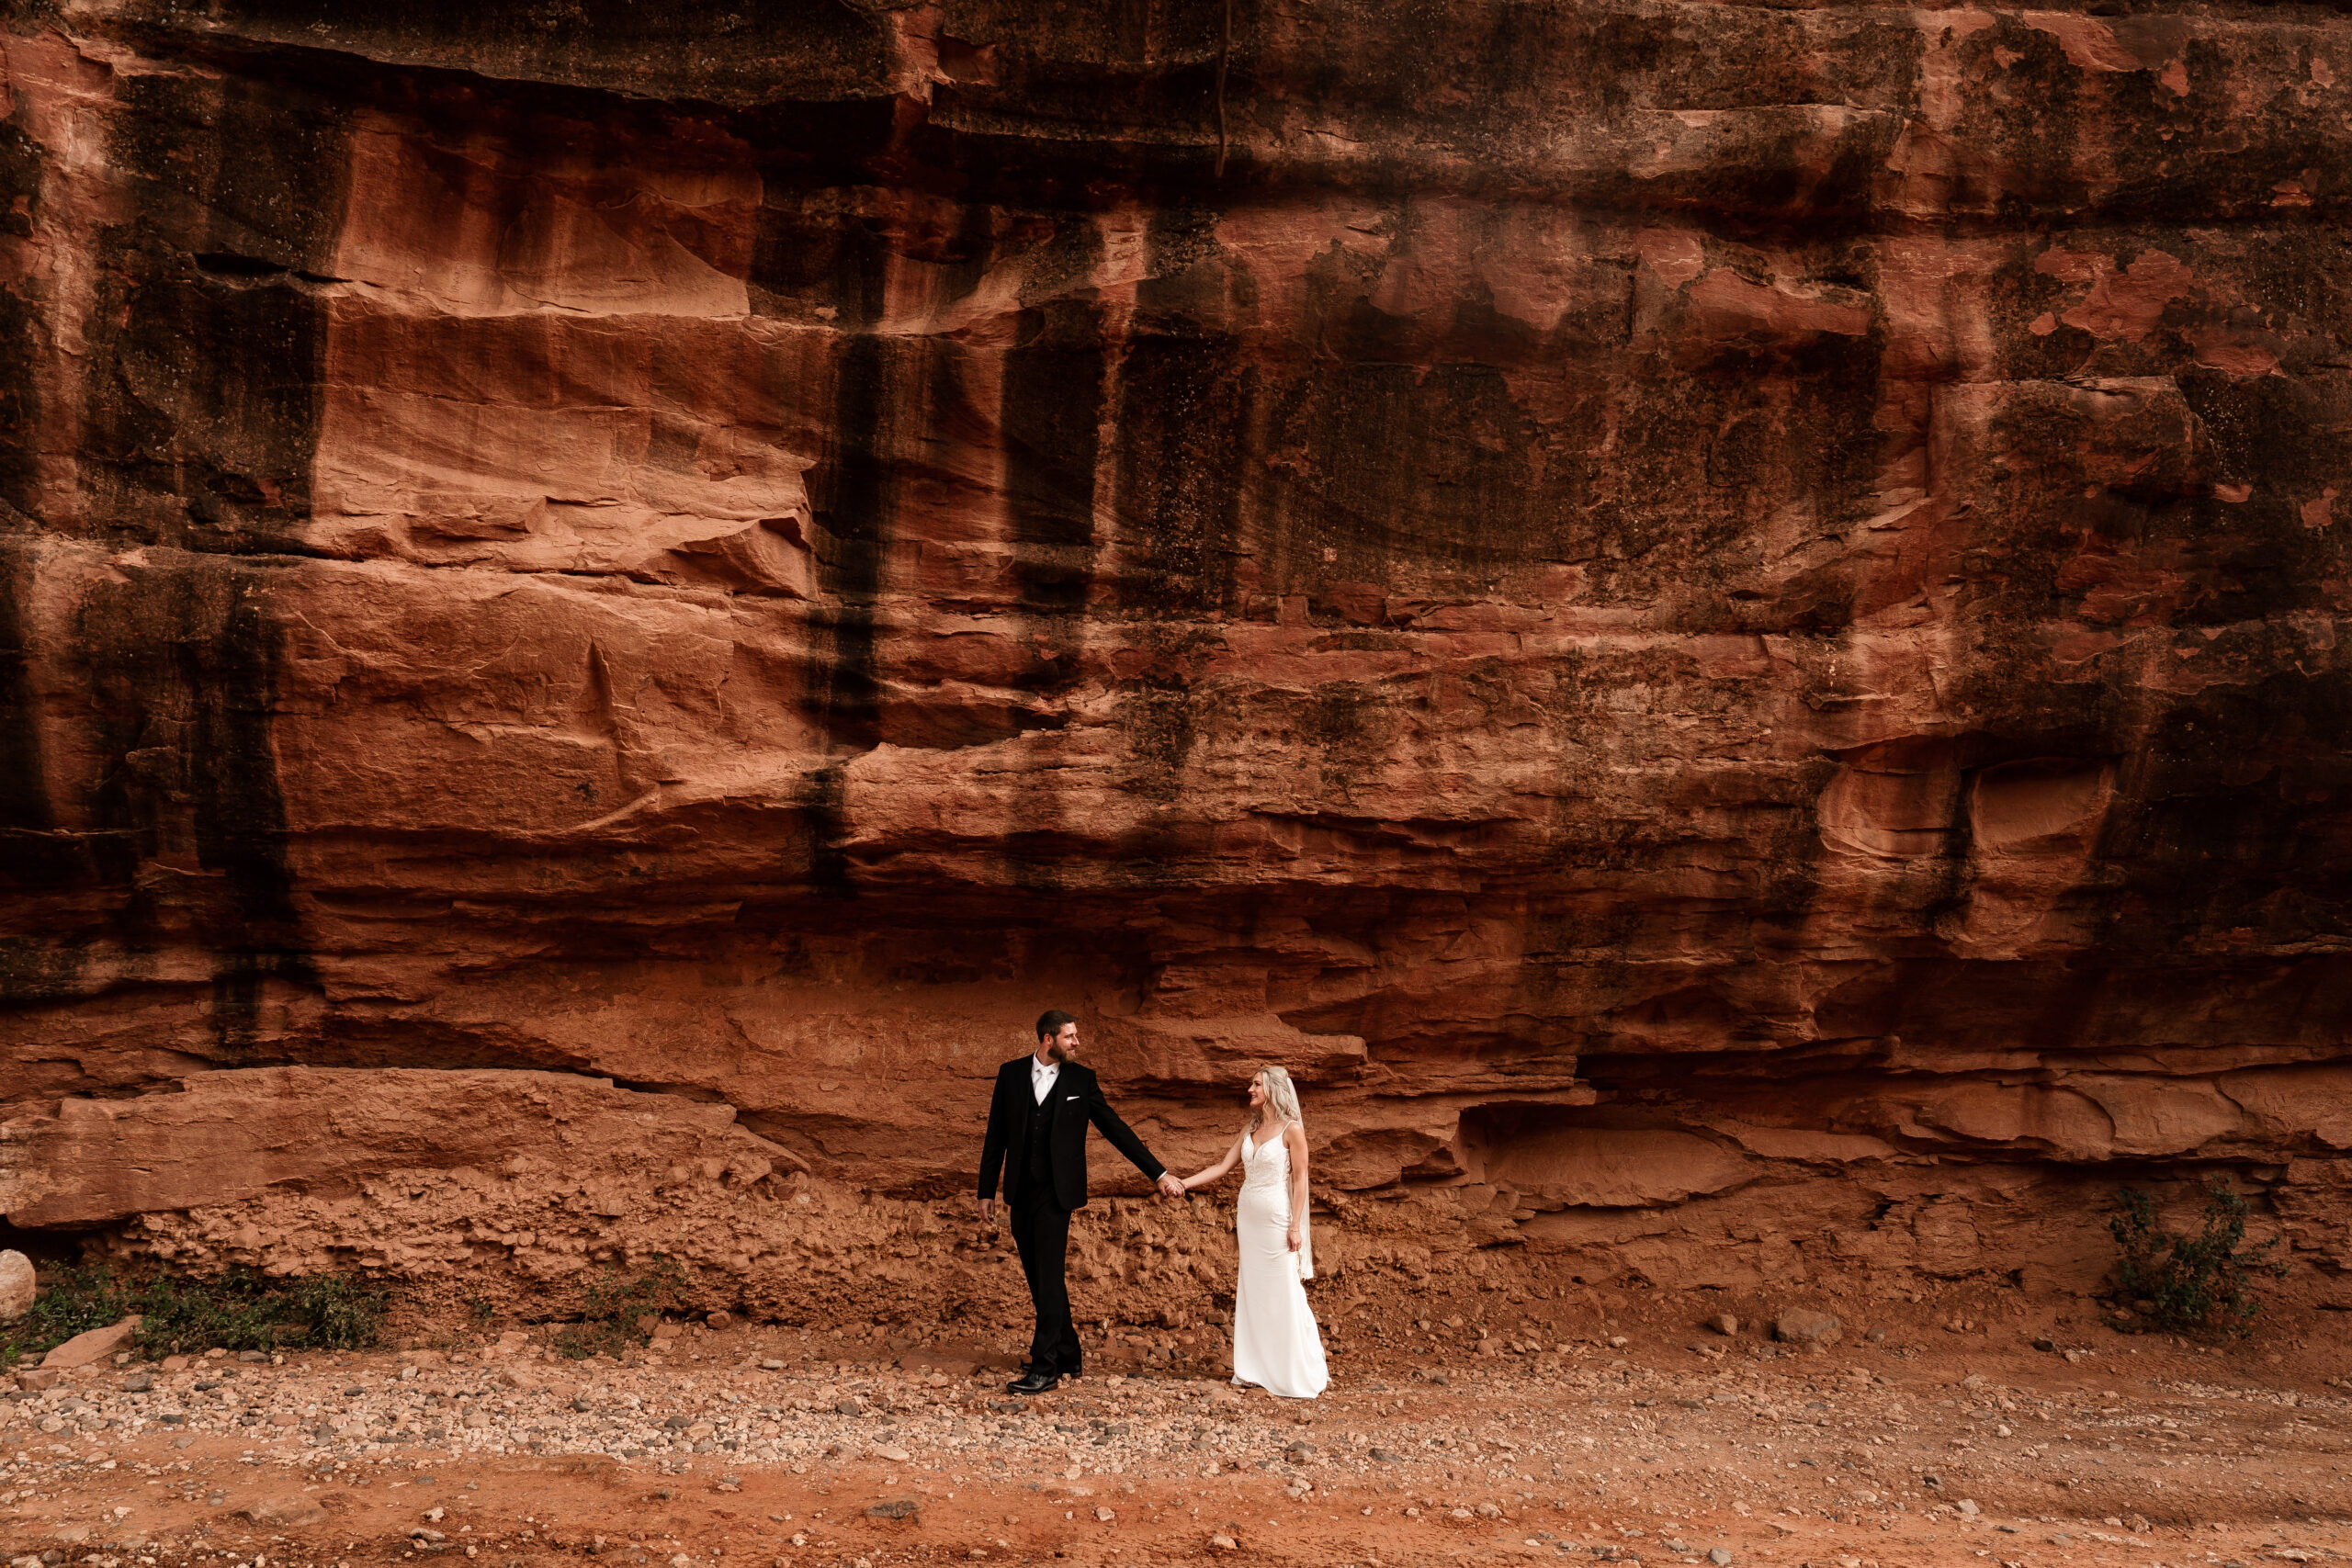 Elopement couple walking under red rock in Sedona, Arizona